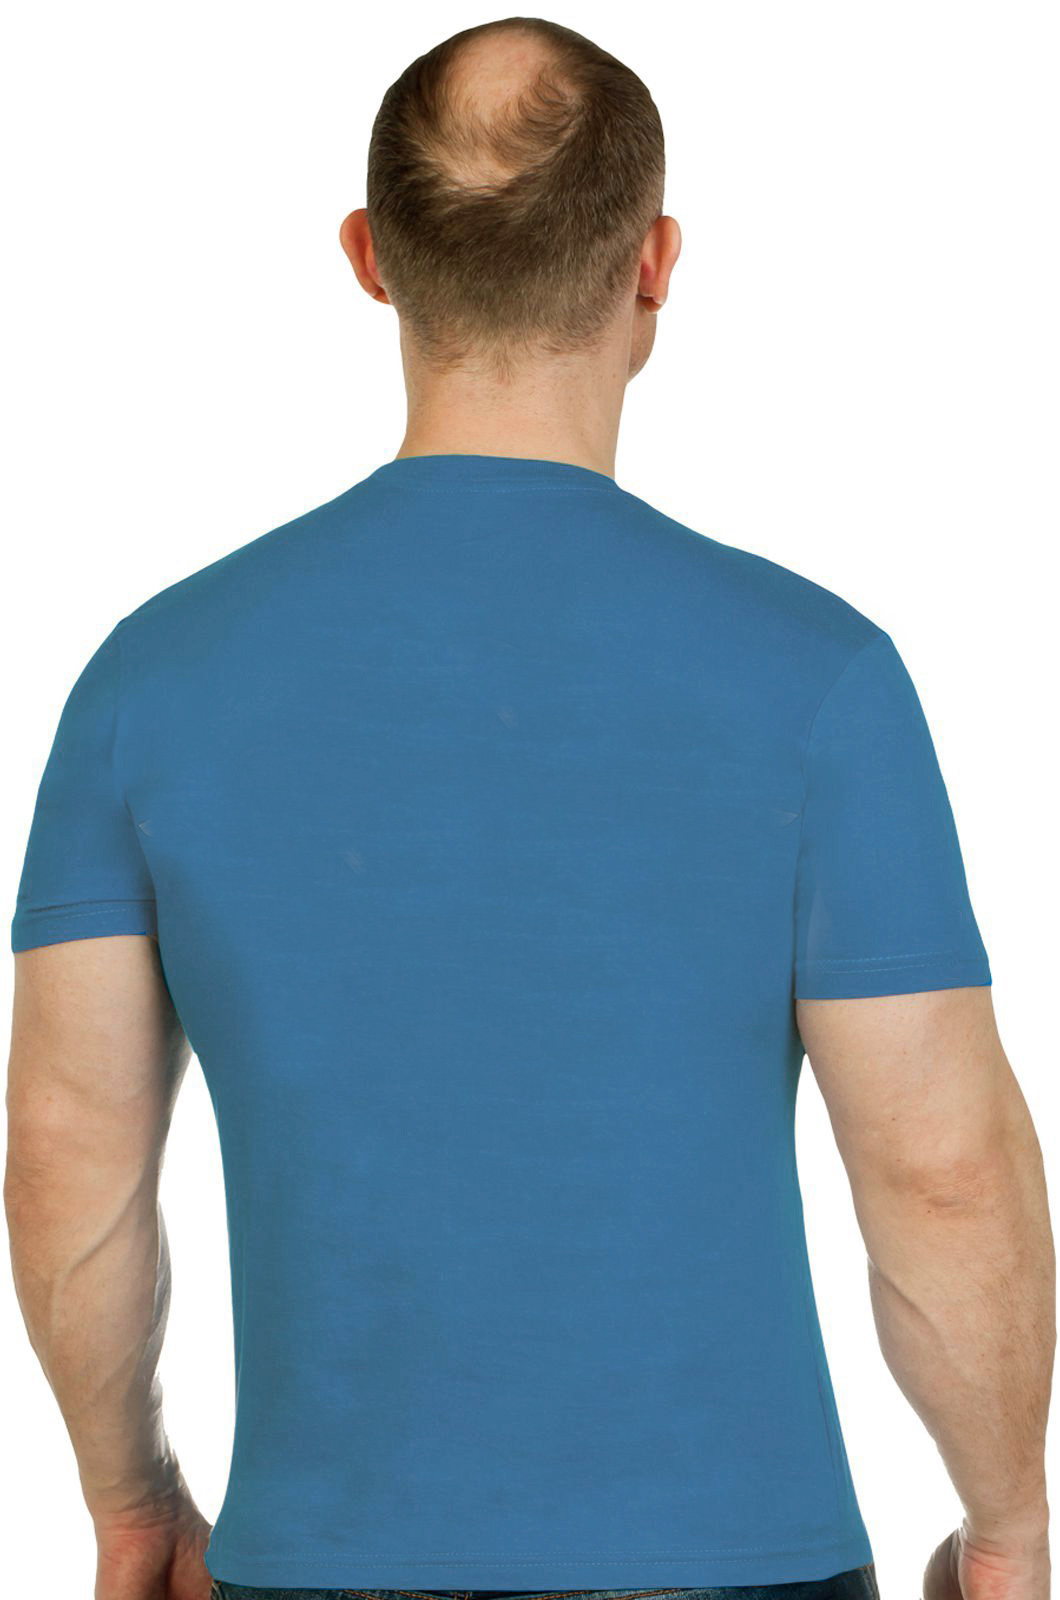 Синяя футболка "Военная разведка" 